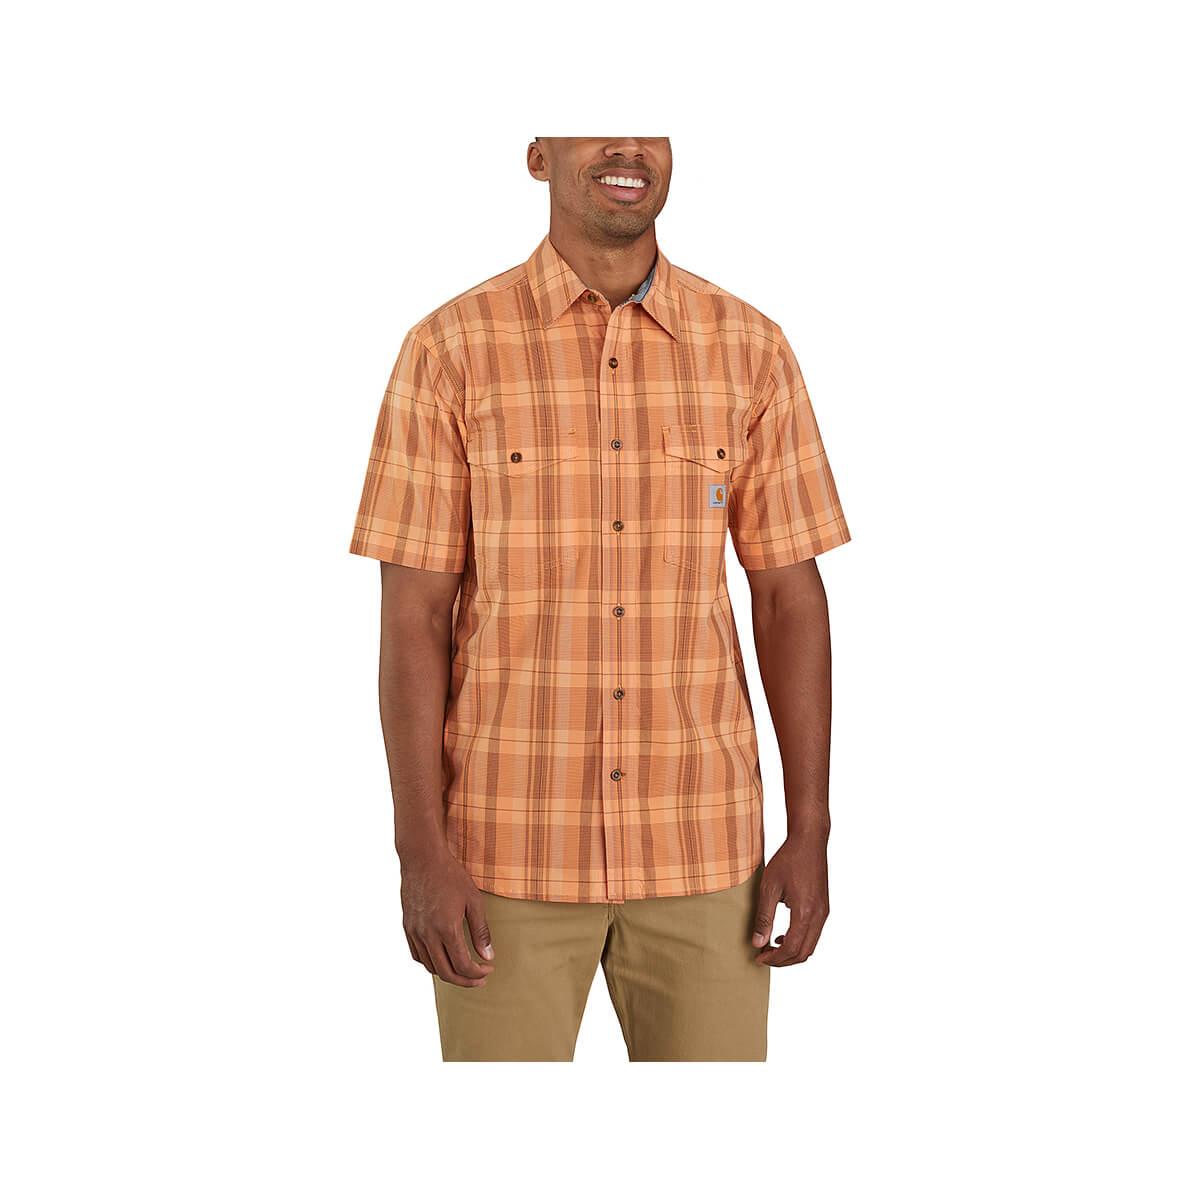  Rugged Flex Relaxed Lightweight Short Sleeve Plaid Shirt